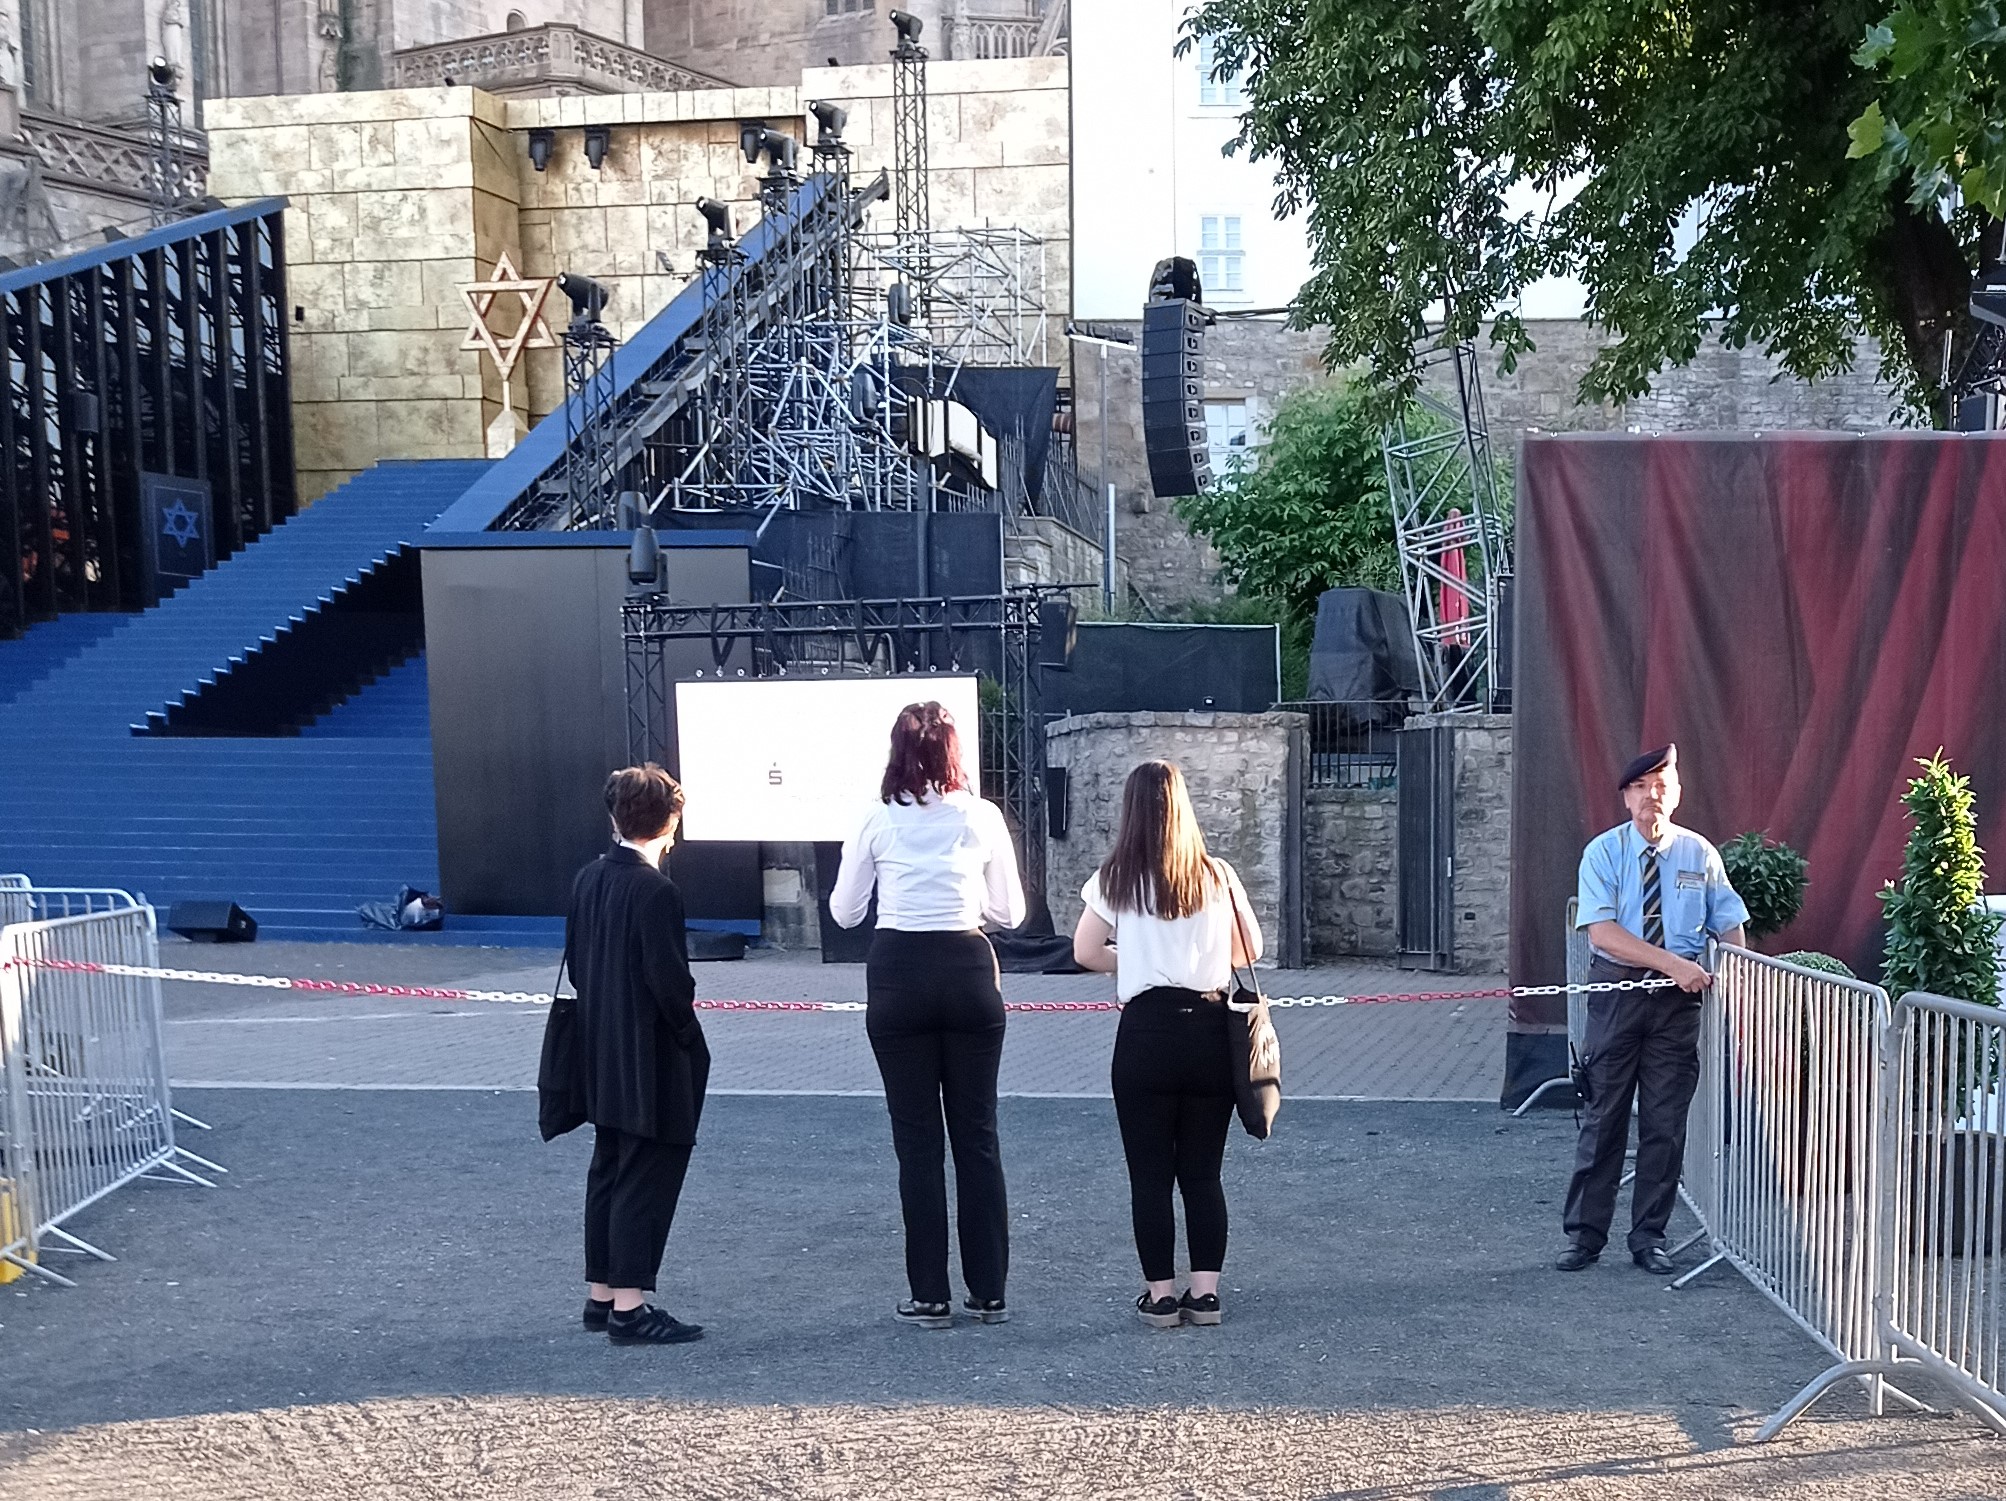 Drei Frauen stehen vor einem Absperrband und schauen auf die Bühne der DomStufen-Festspiele. Ein Mann sichert die Absperrung.